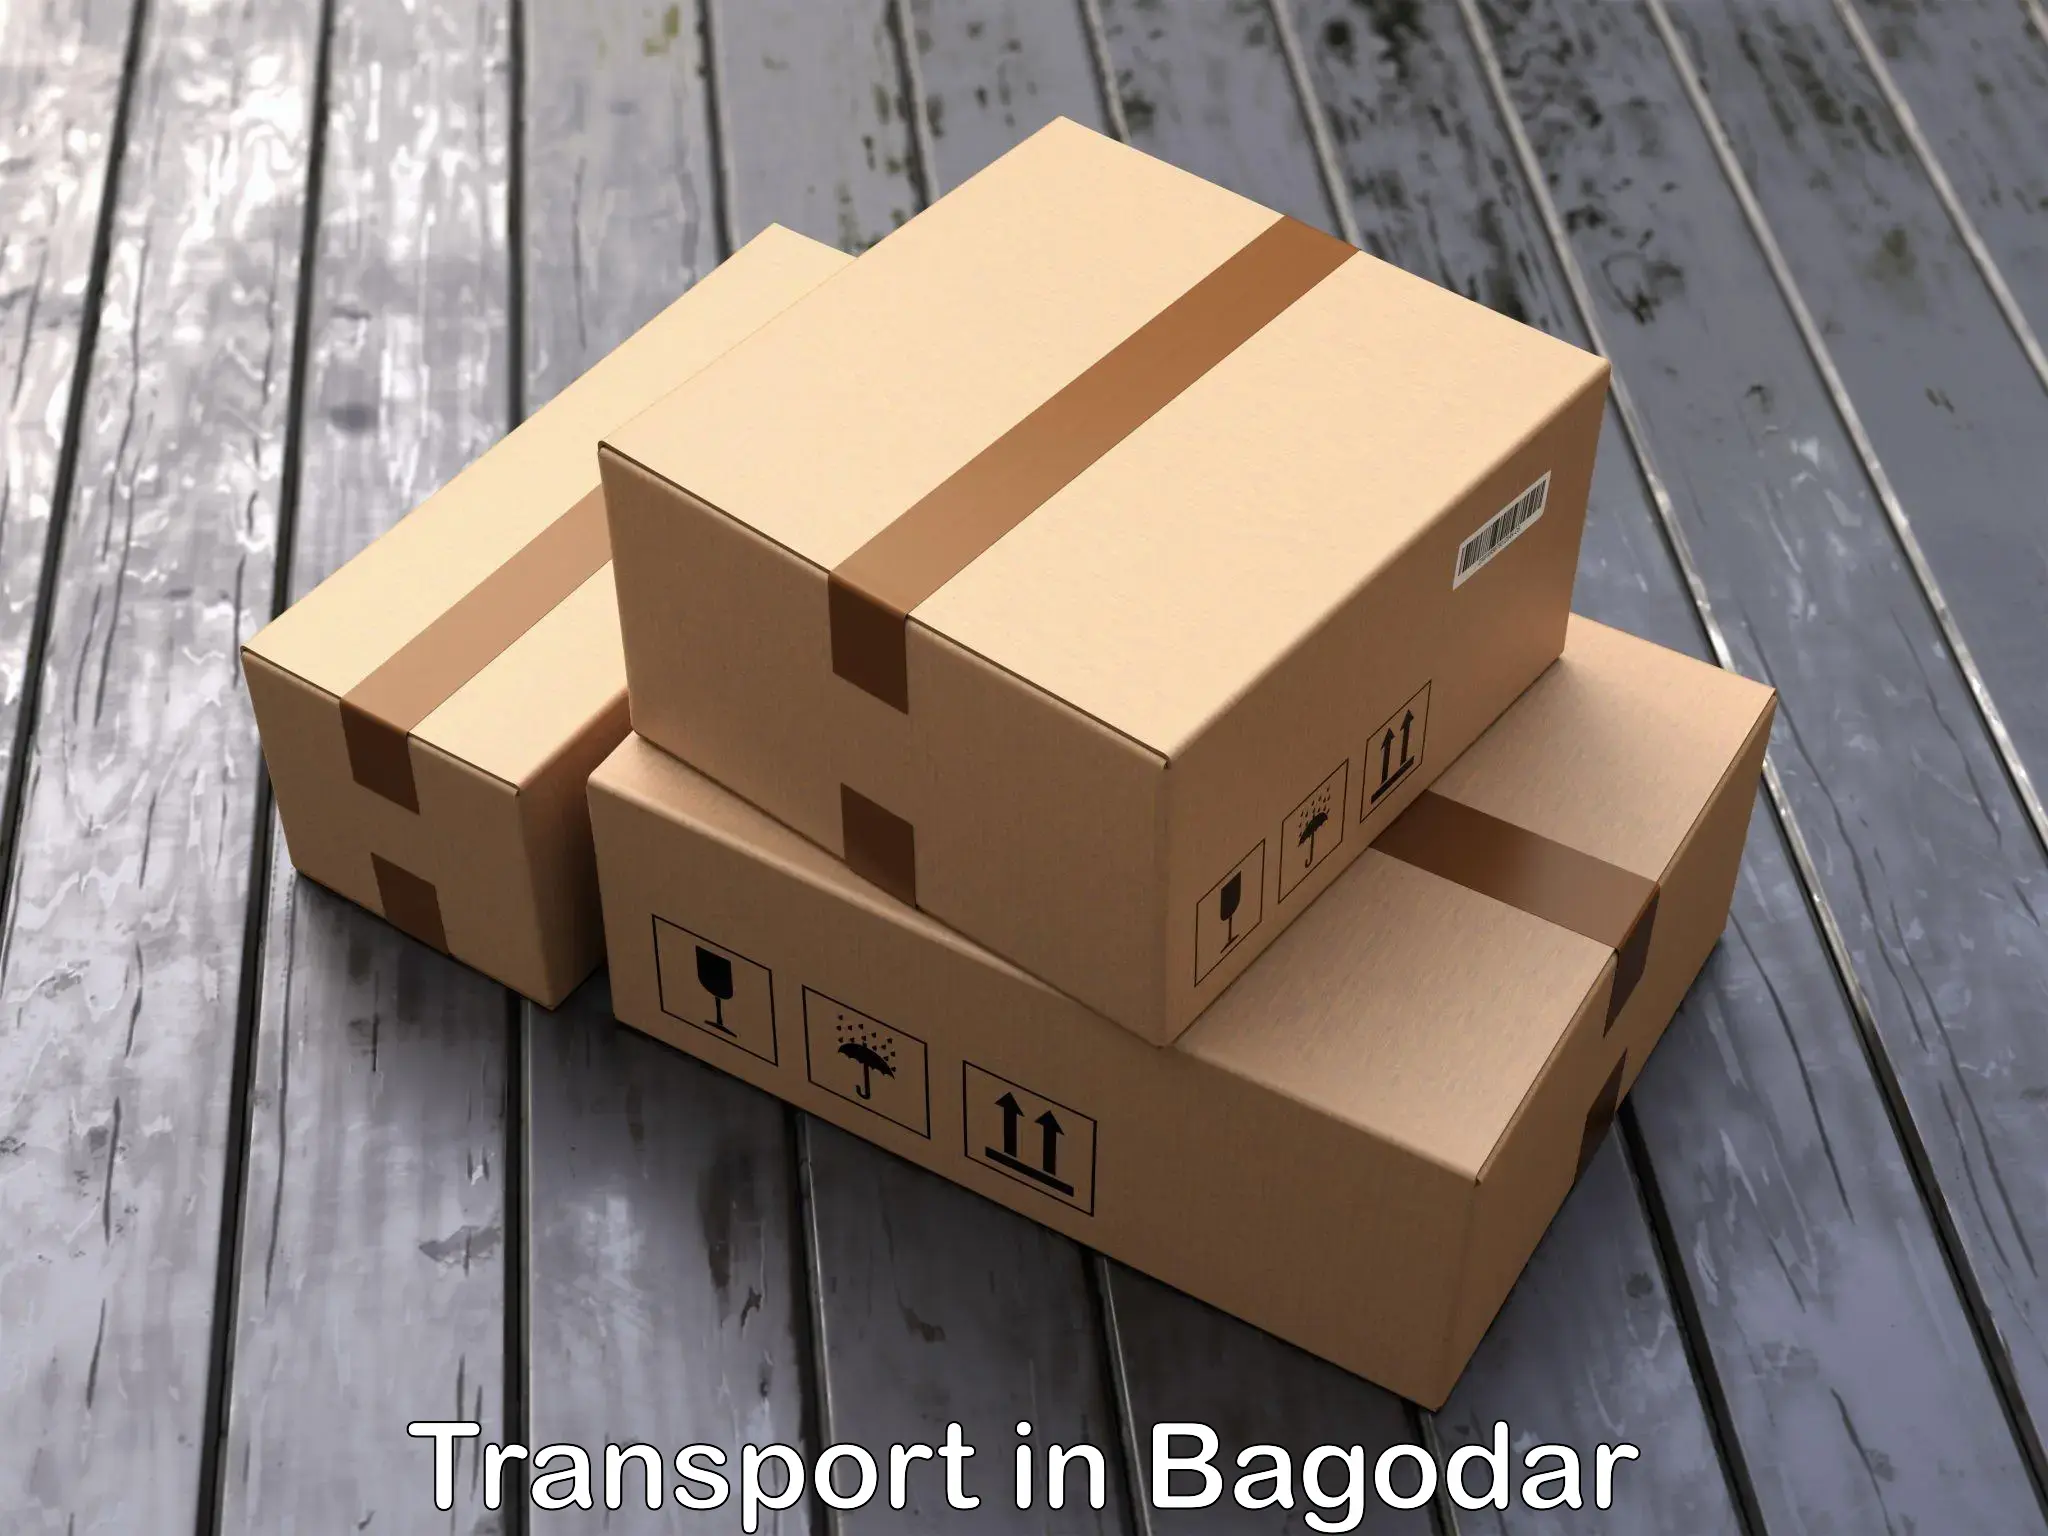 Land transport services in Bagodar